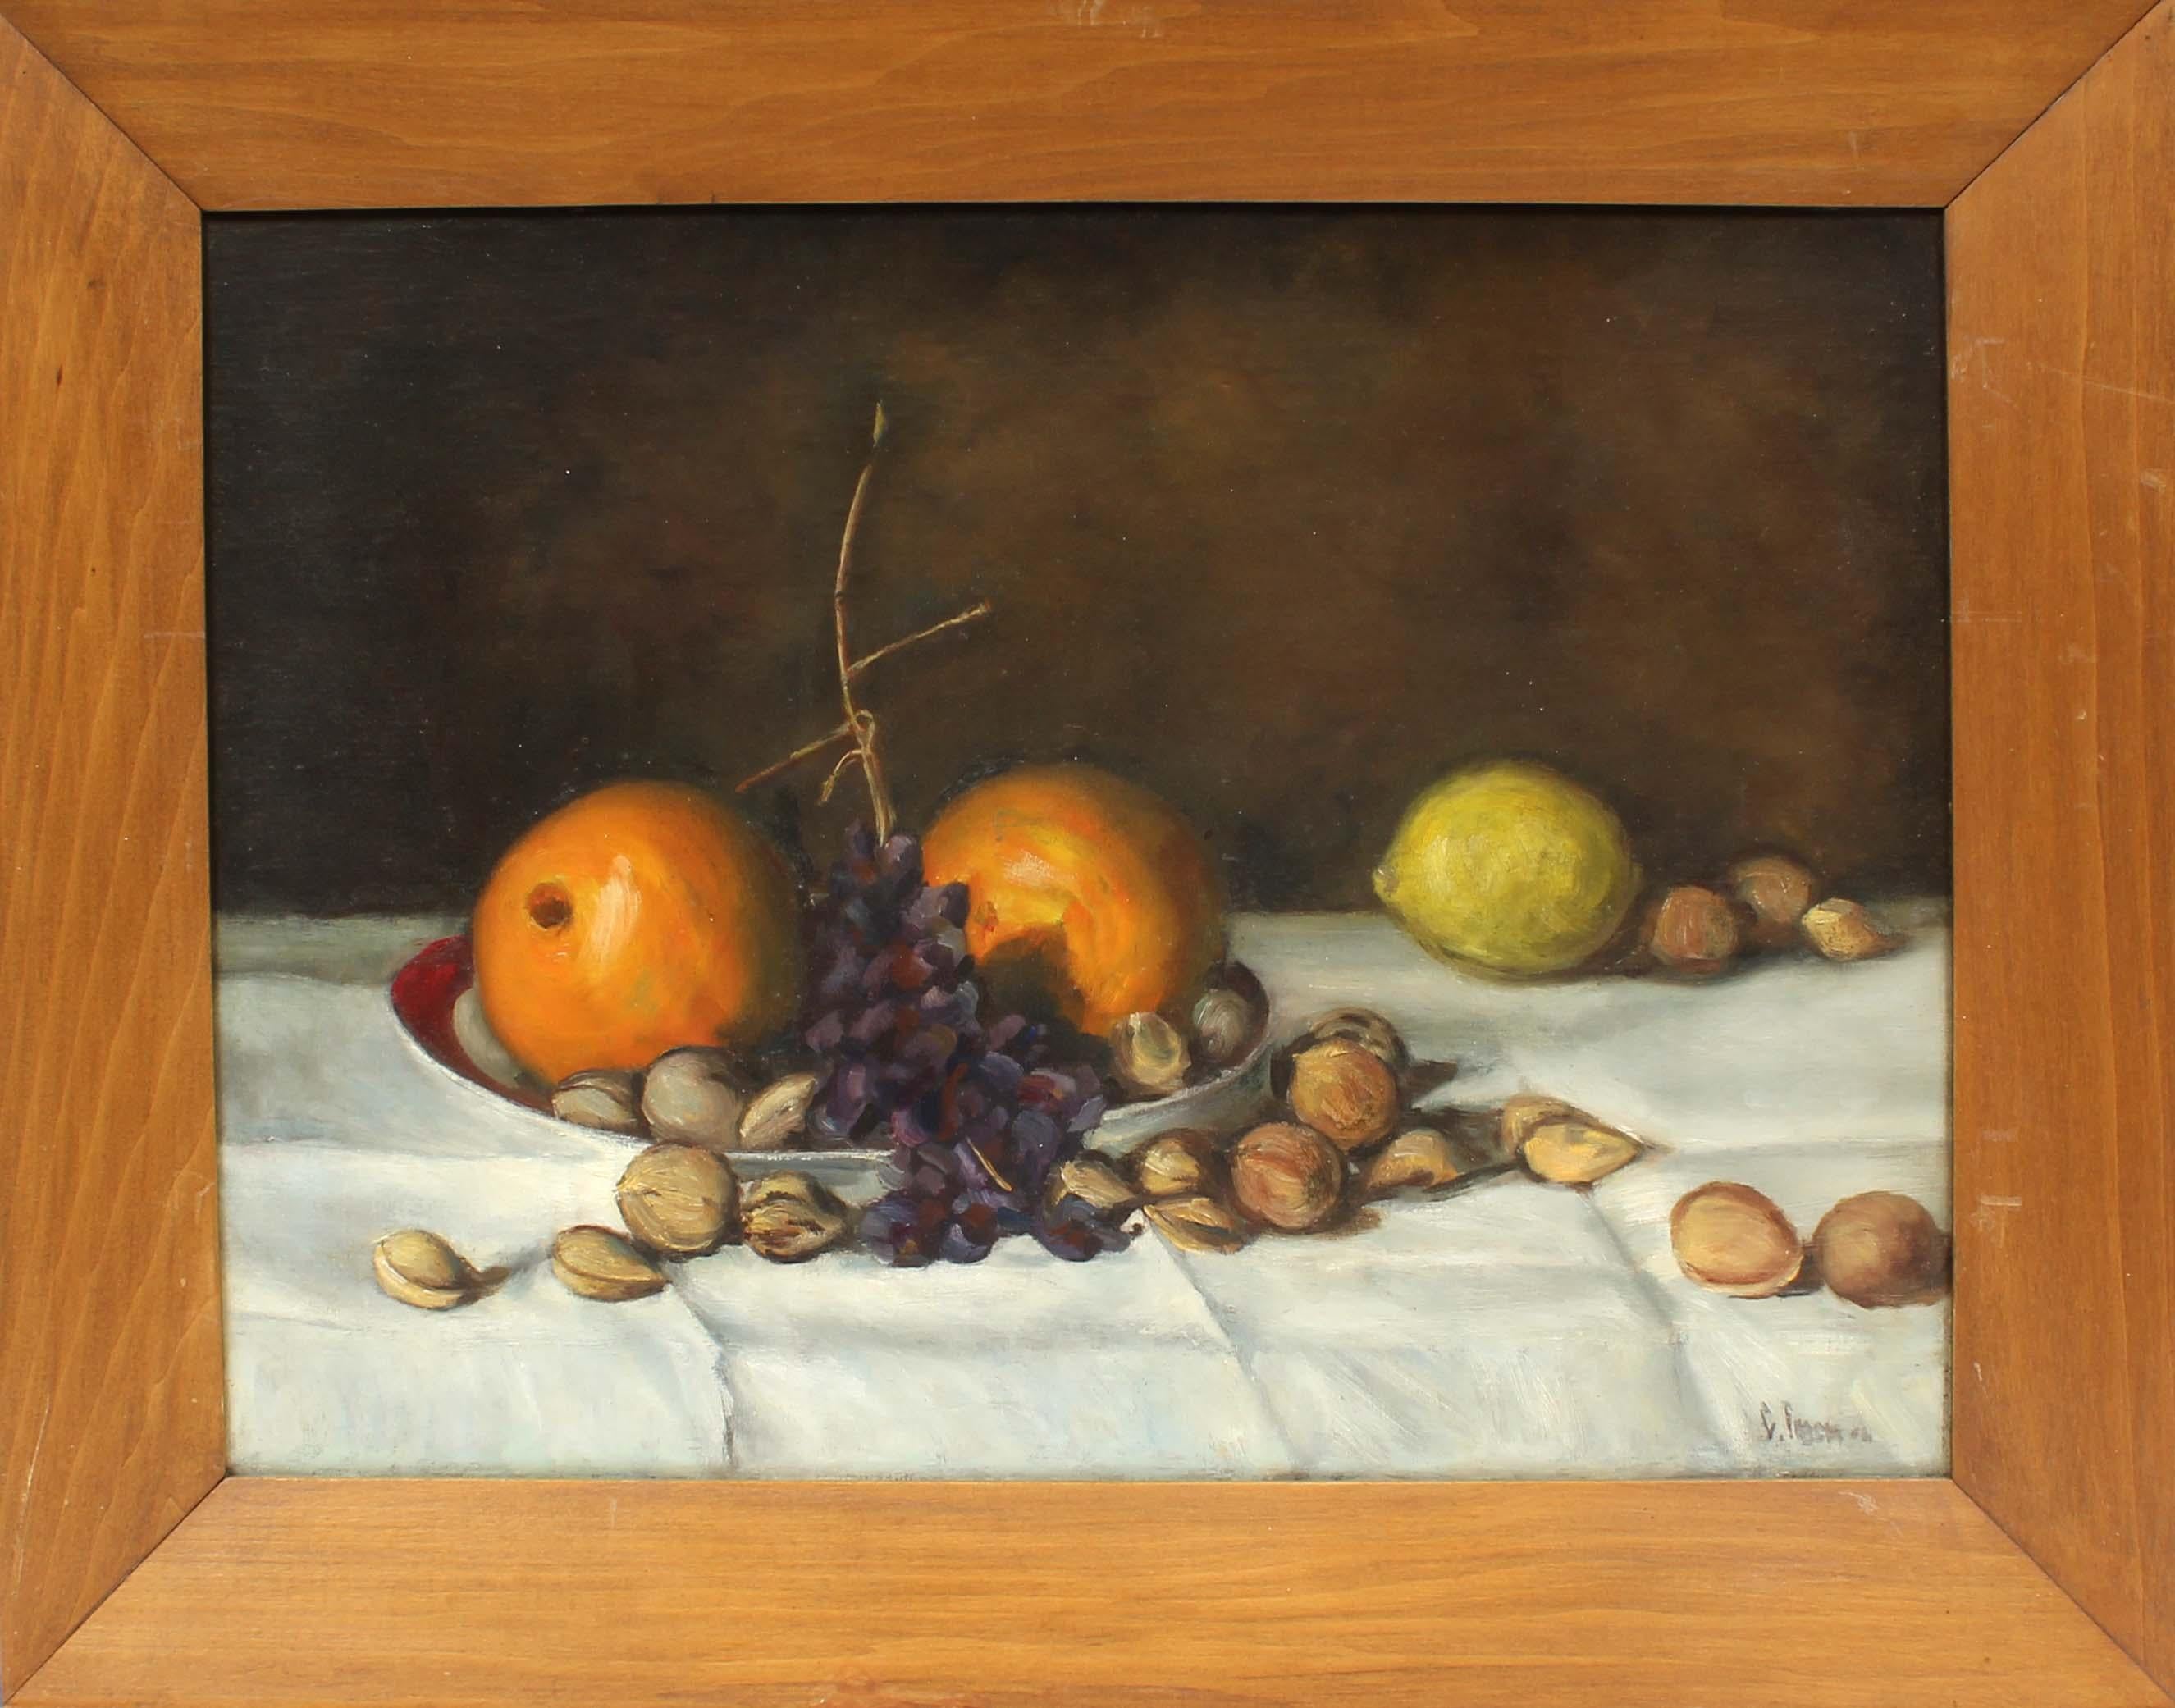 Signiertes Obststillleben mit Orangen, Zitronen und Nüssen. Rätselhafter Künstler, rechts unten unleserlich signiert. Öl auf Karton, gerahmt.
